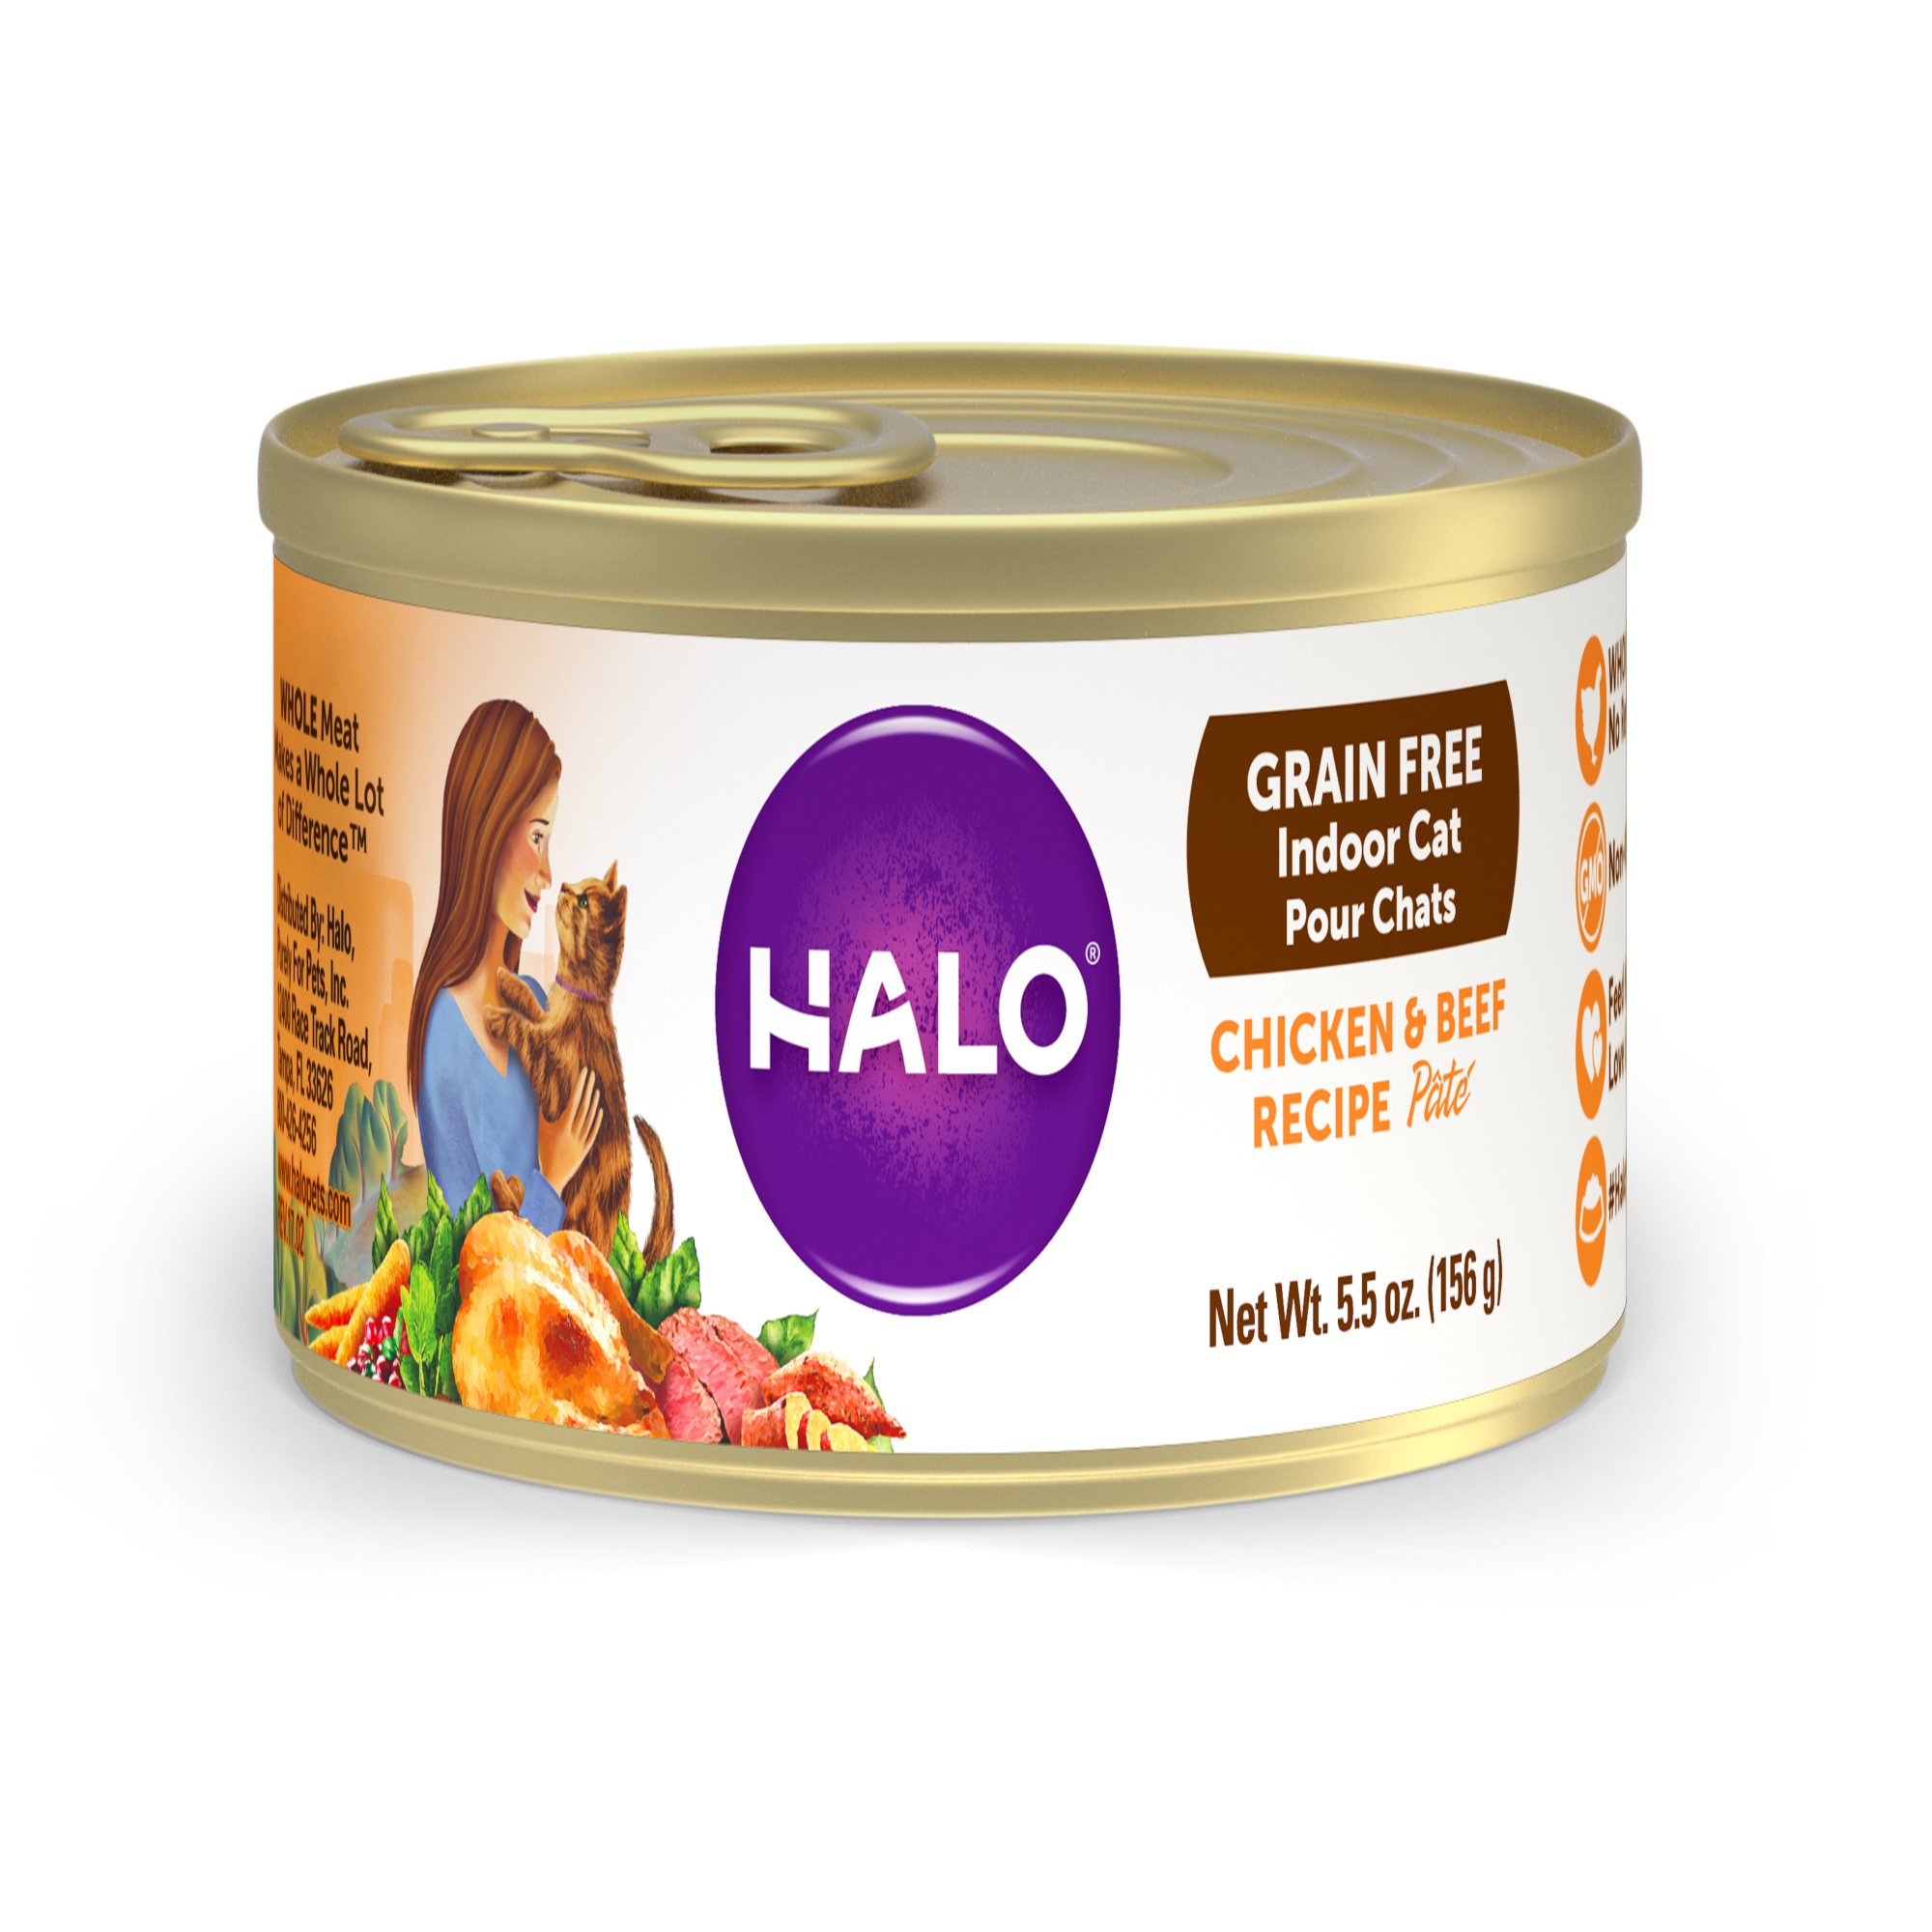 Halo Grain Free Indoor Chicken & Beef Recipe Wet Cat Food Petco